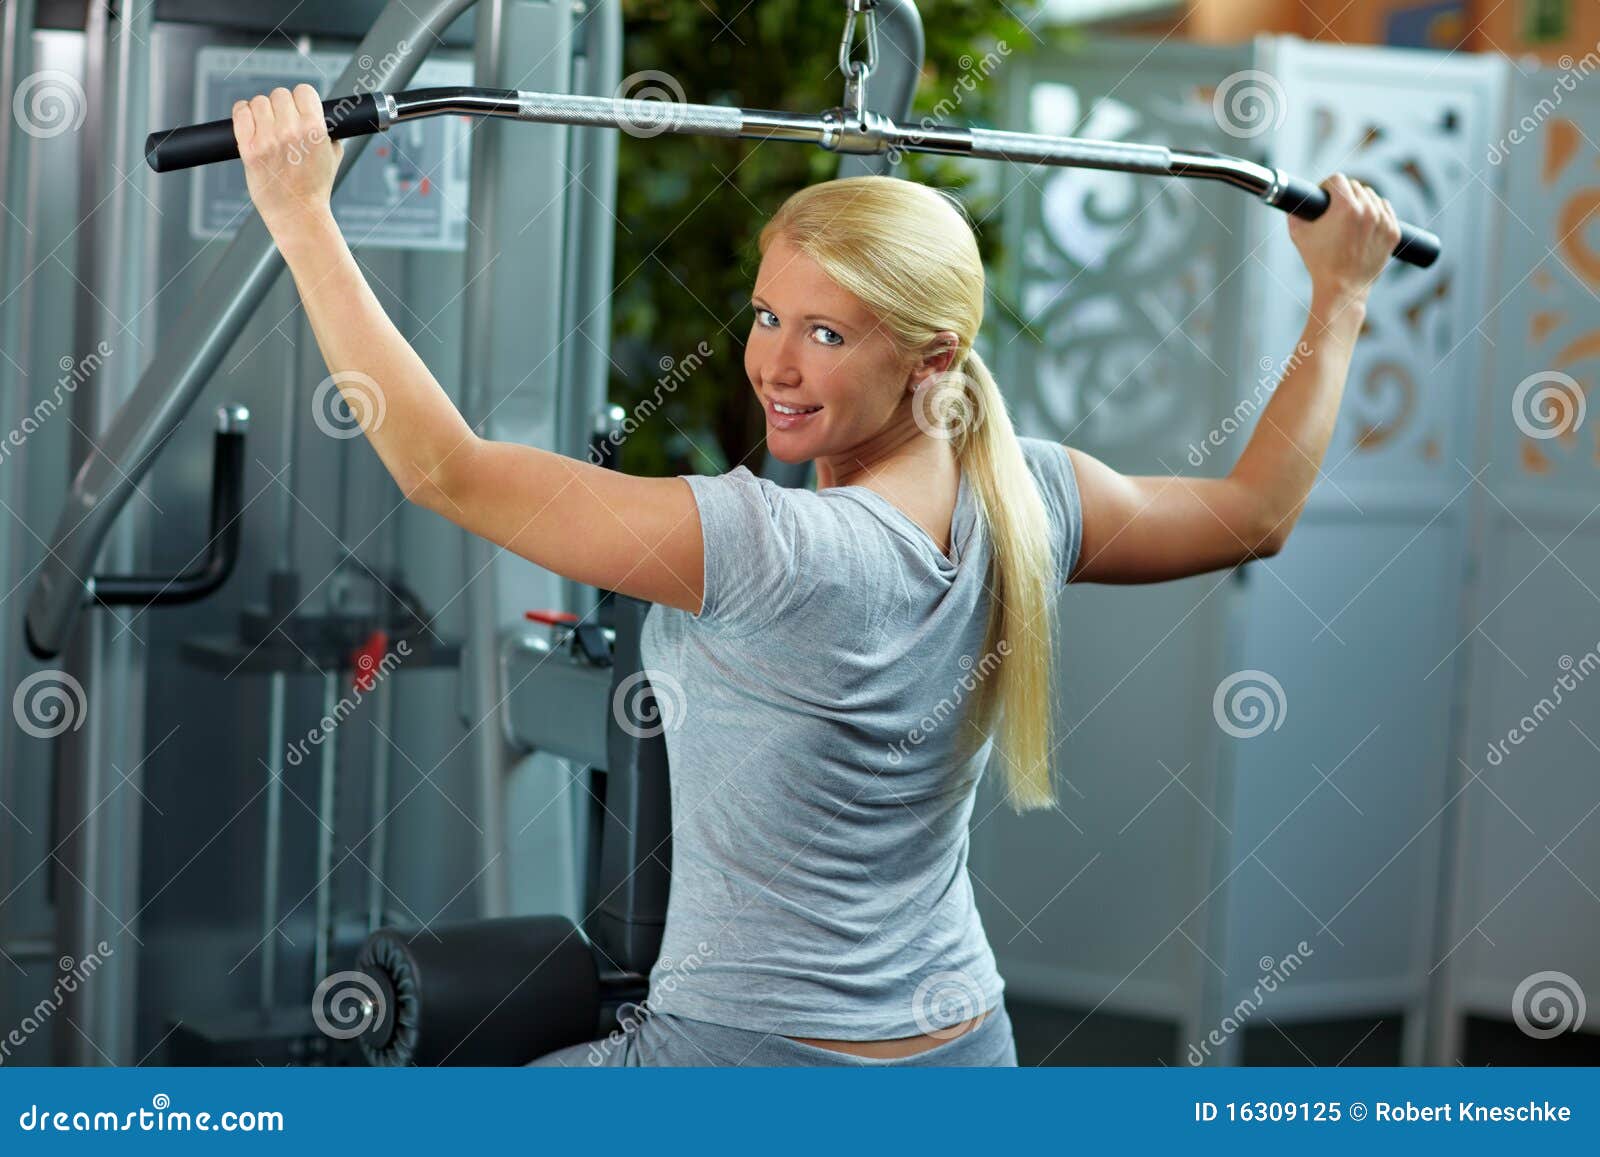 Woman at lat machine stock image. Image of muscle, beauty - 16309125